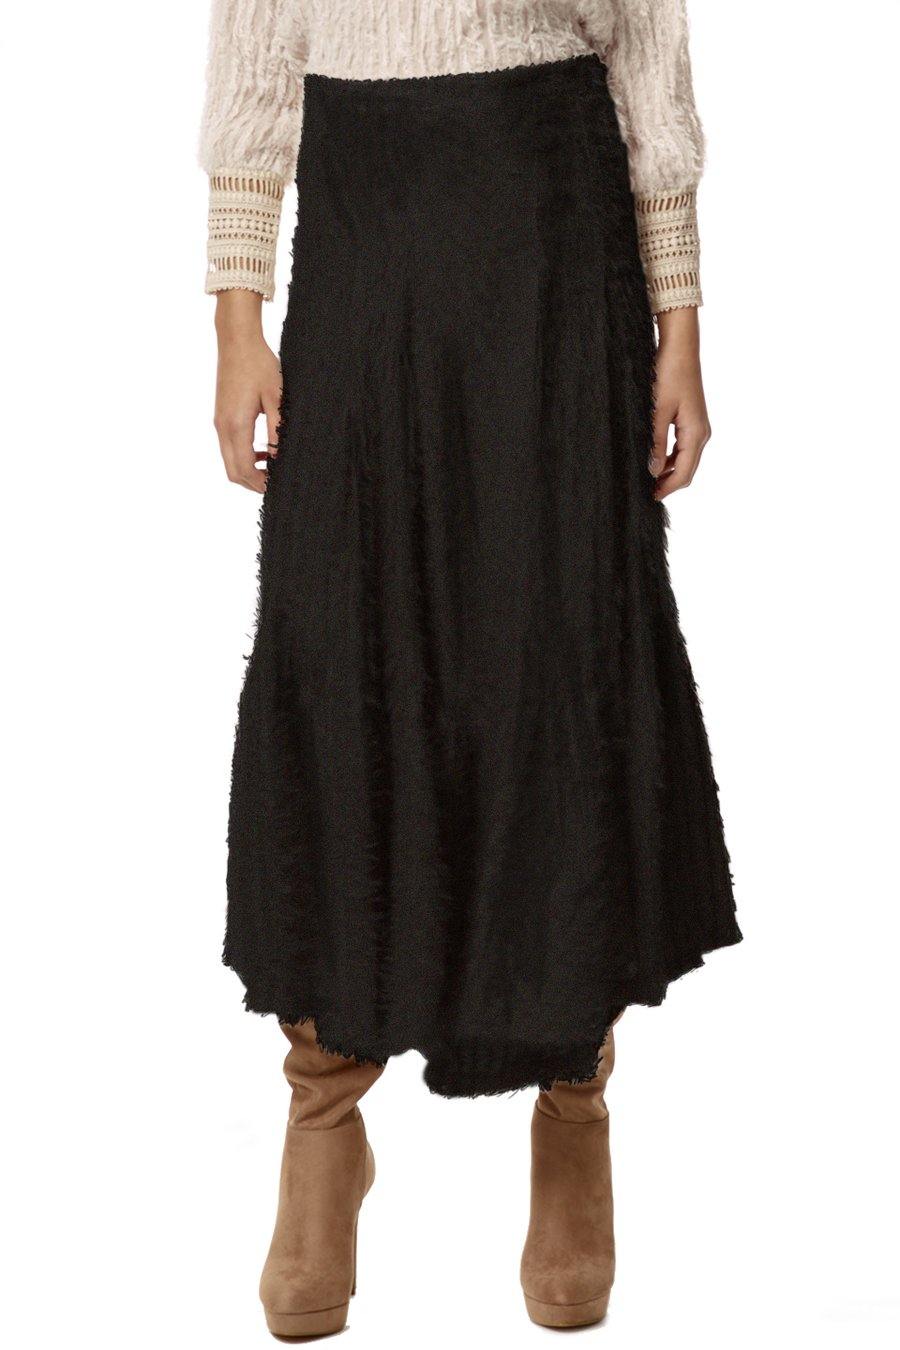 Stellah Textured Flare Skirt Black Front